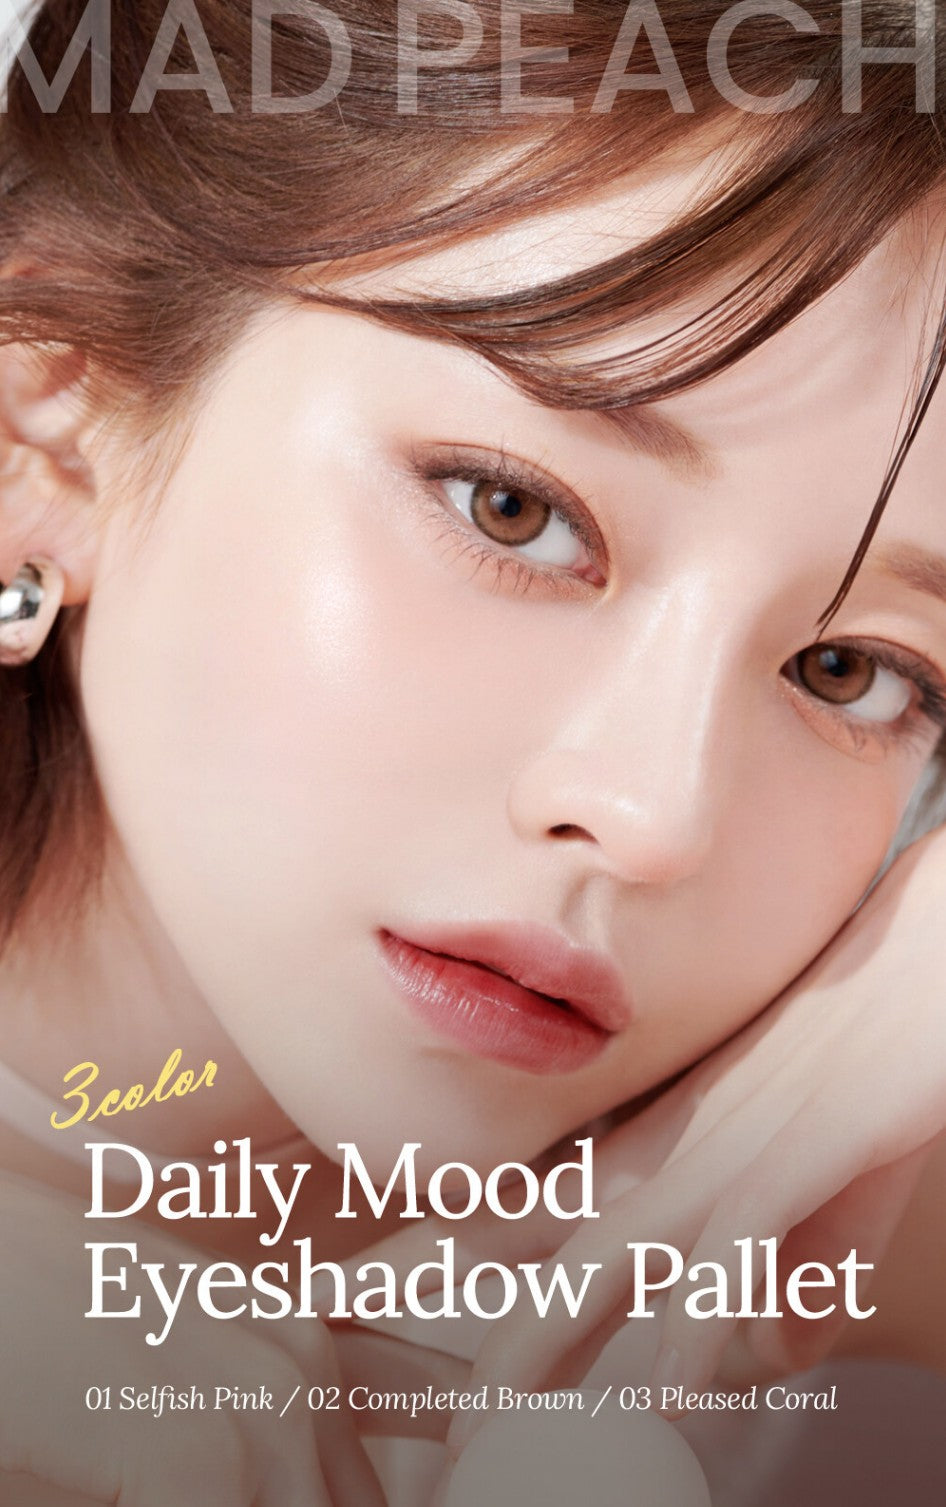 – Eyeshadow mochiskin Mood Mad Peach] Daily Palette